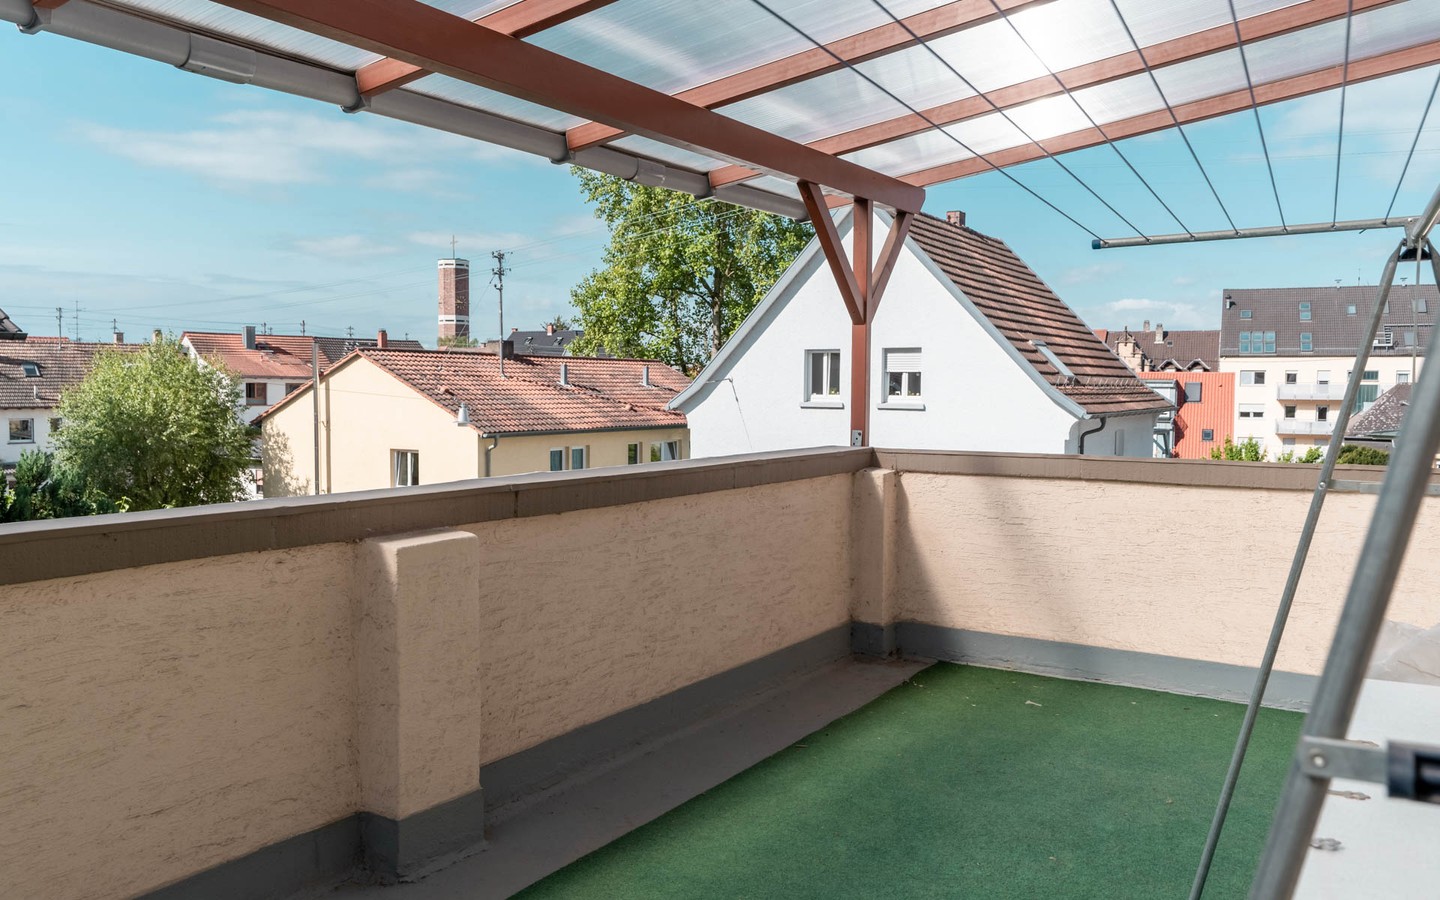 Balkon 2. OG - Seltene Gelegenheit: Helle, teilvermietete Doppelhaushälfte in beliebter Wohnlage